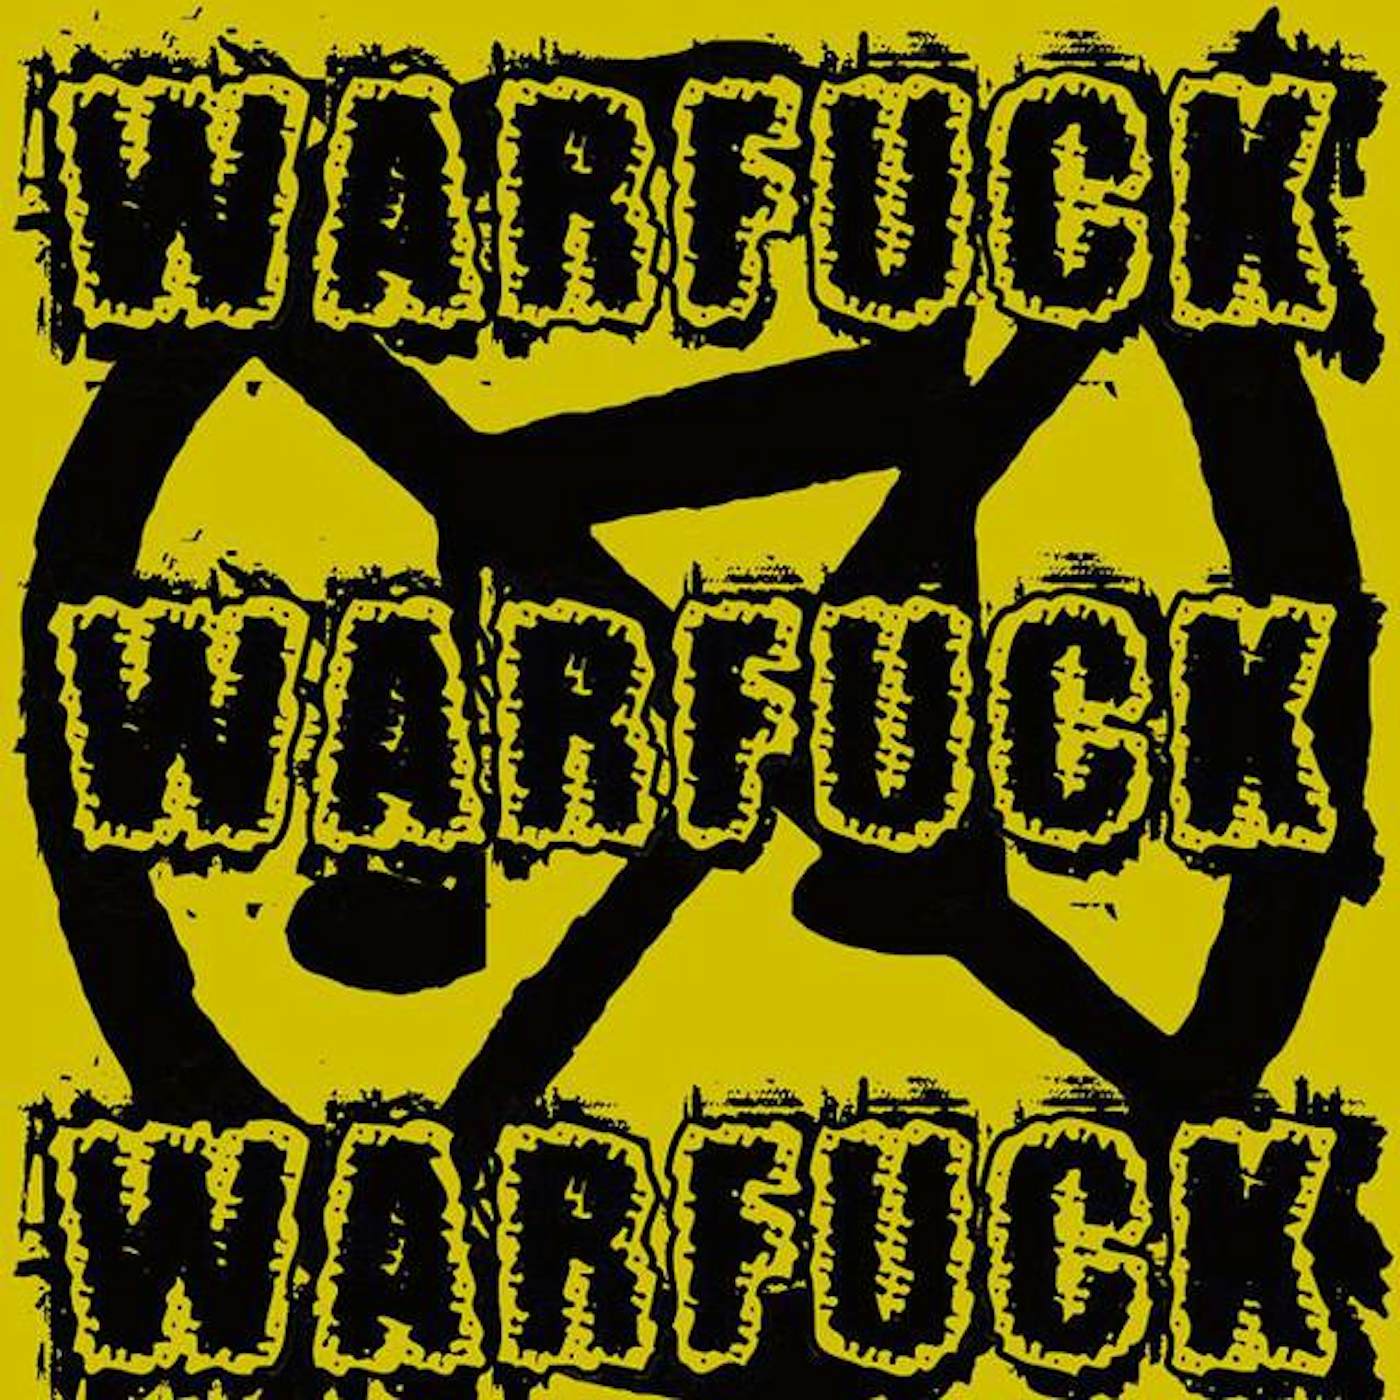 Warfuck